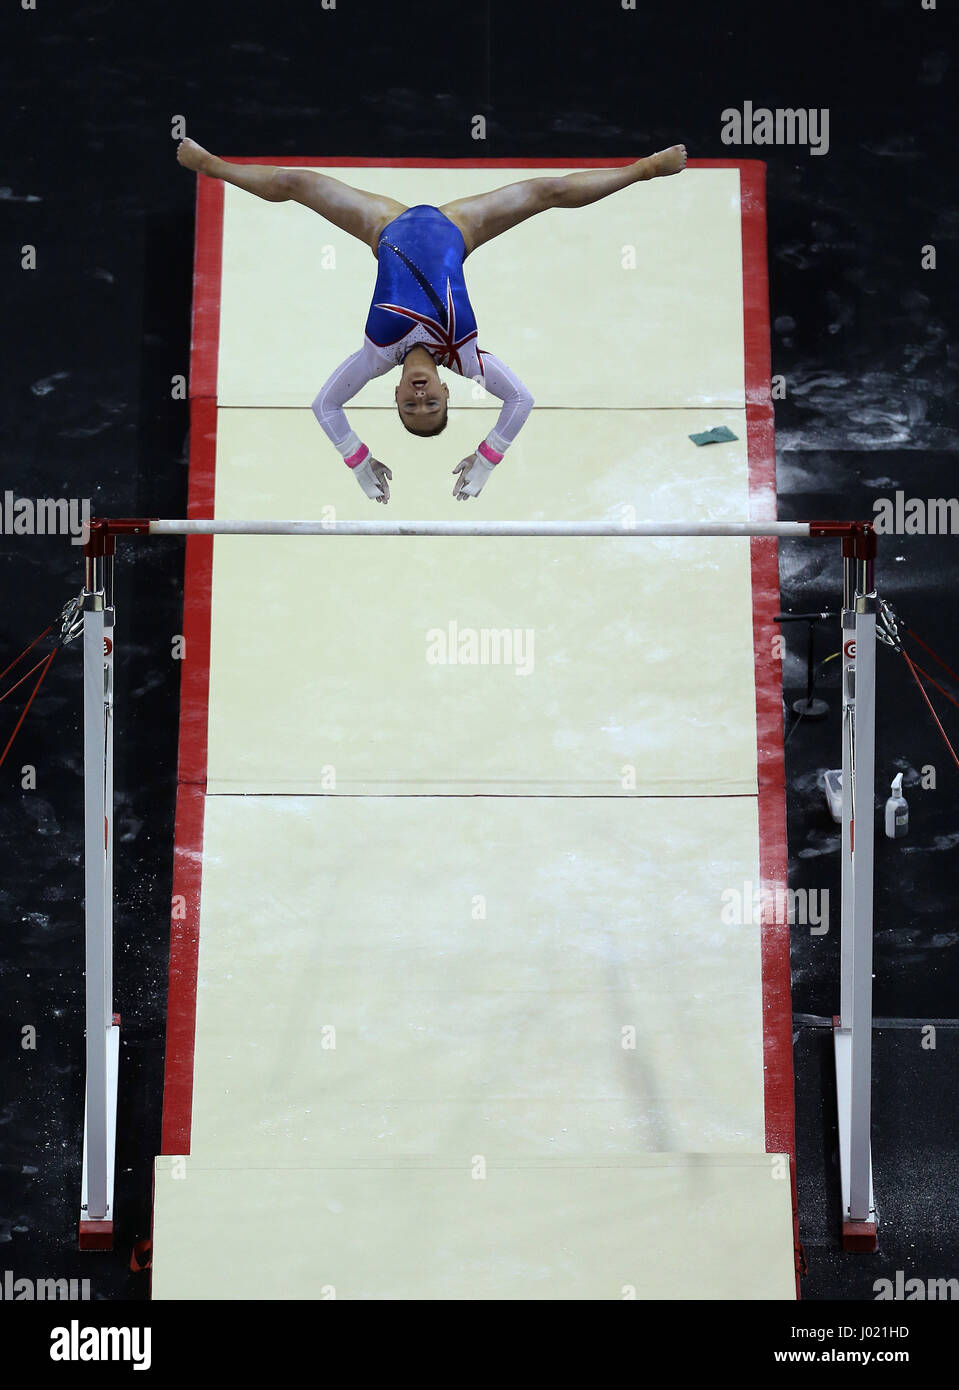 Großbritanniens Amy am Stufenbarren während der WM der Gymnastik in der O2 London Tinkler. Stockfoto